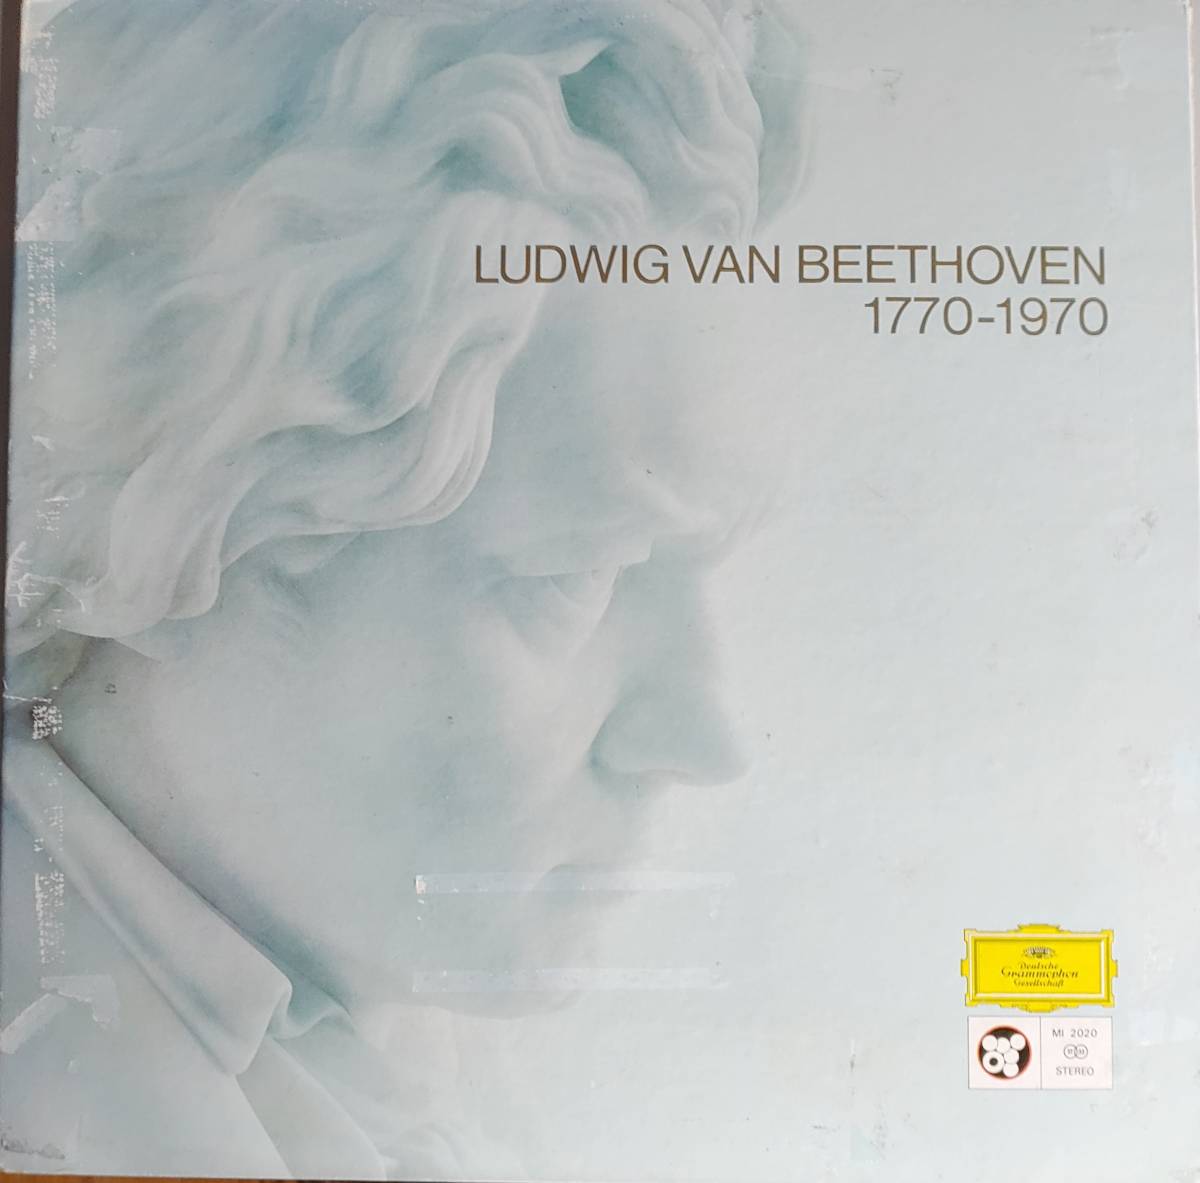 ヘルベルト・フォン・カラヤン指揮 ベルリン・フィルハーモニー管弦楽団　LPレコード「LUDWIG VAN BEETHOVEN 1770-1970」_画像1